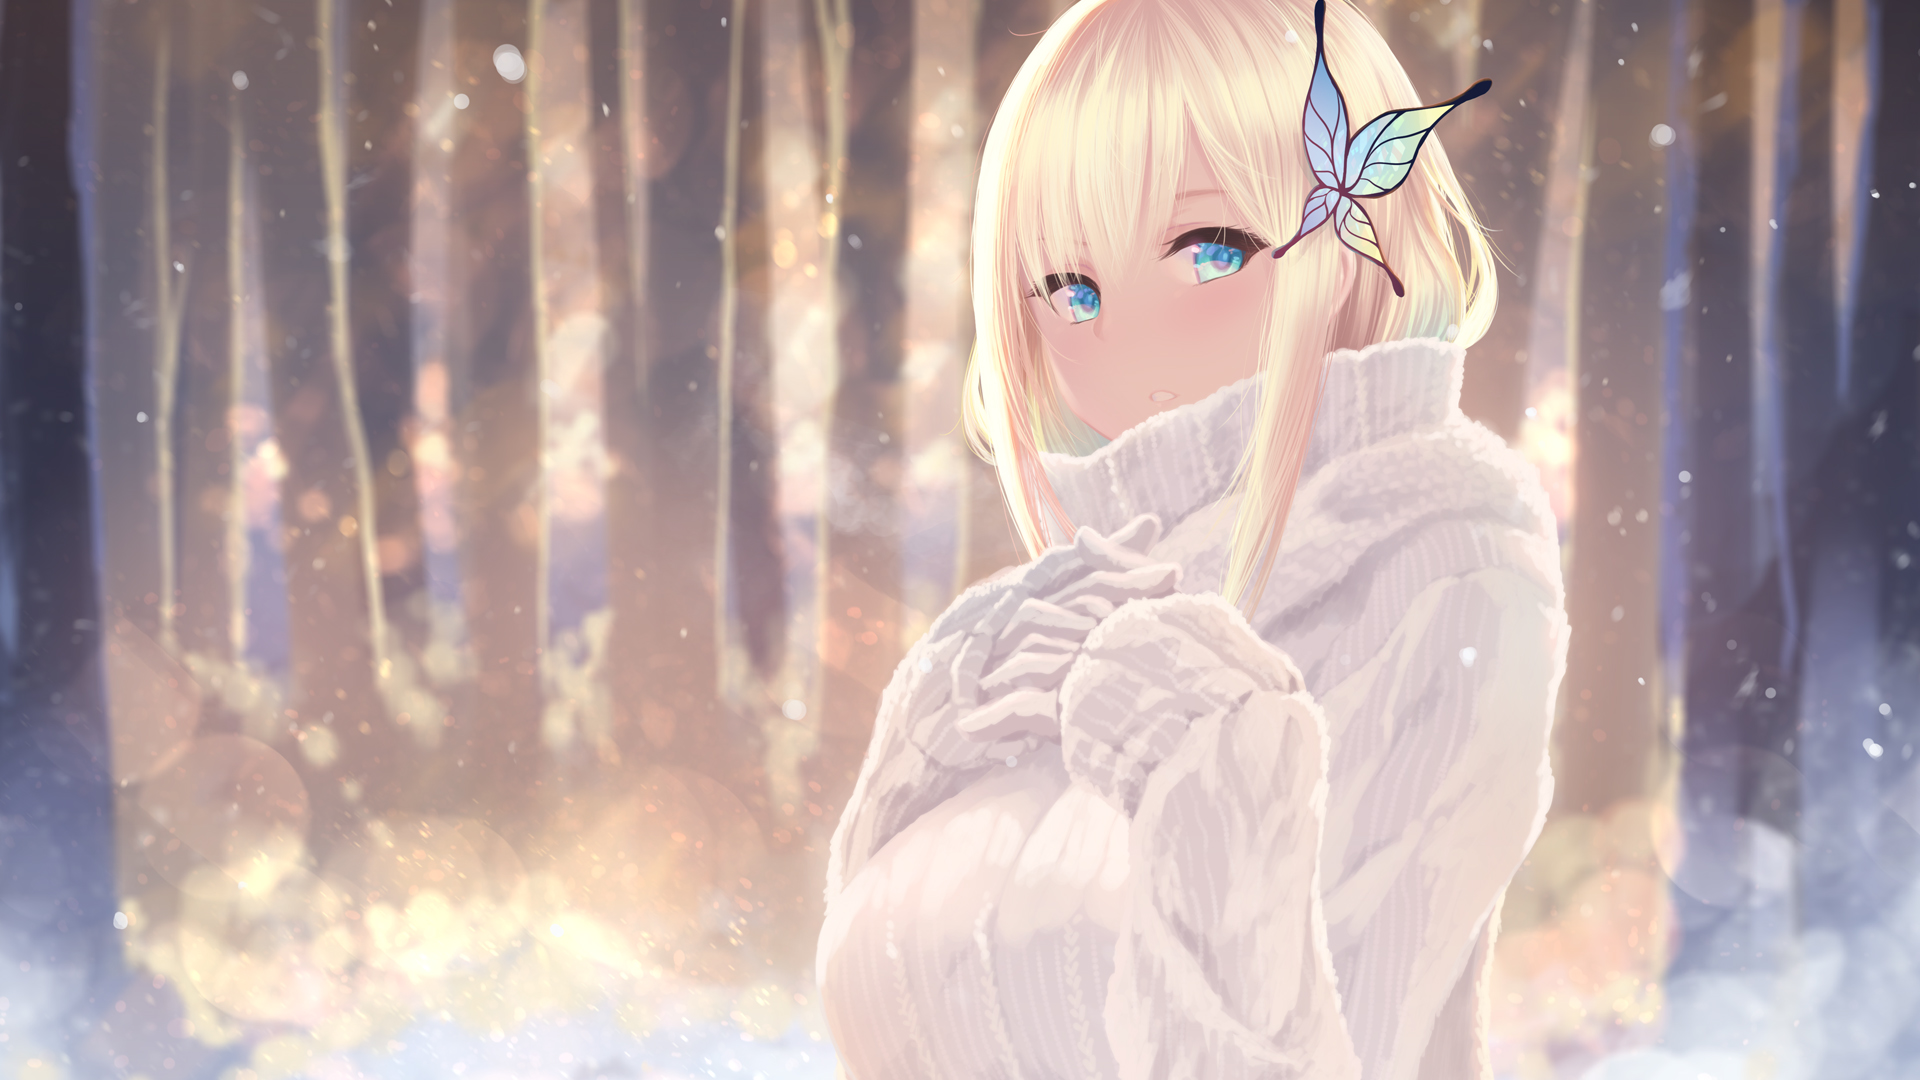 Anime 1920x1080 anime girls anime Boku wa Tomodachi ga Sukunai Kashiwazaki Sena blue eyes blonde snow outdoors trees pullover big boobs Cait Aron sweater